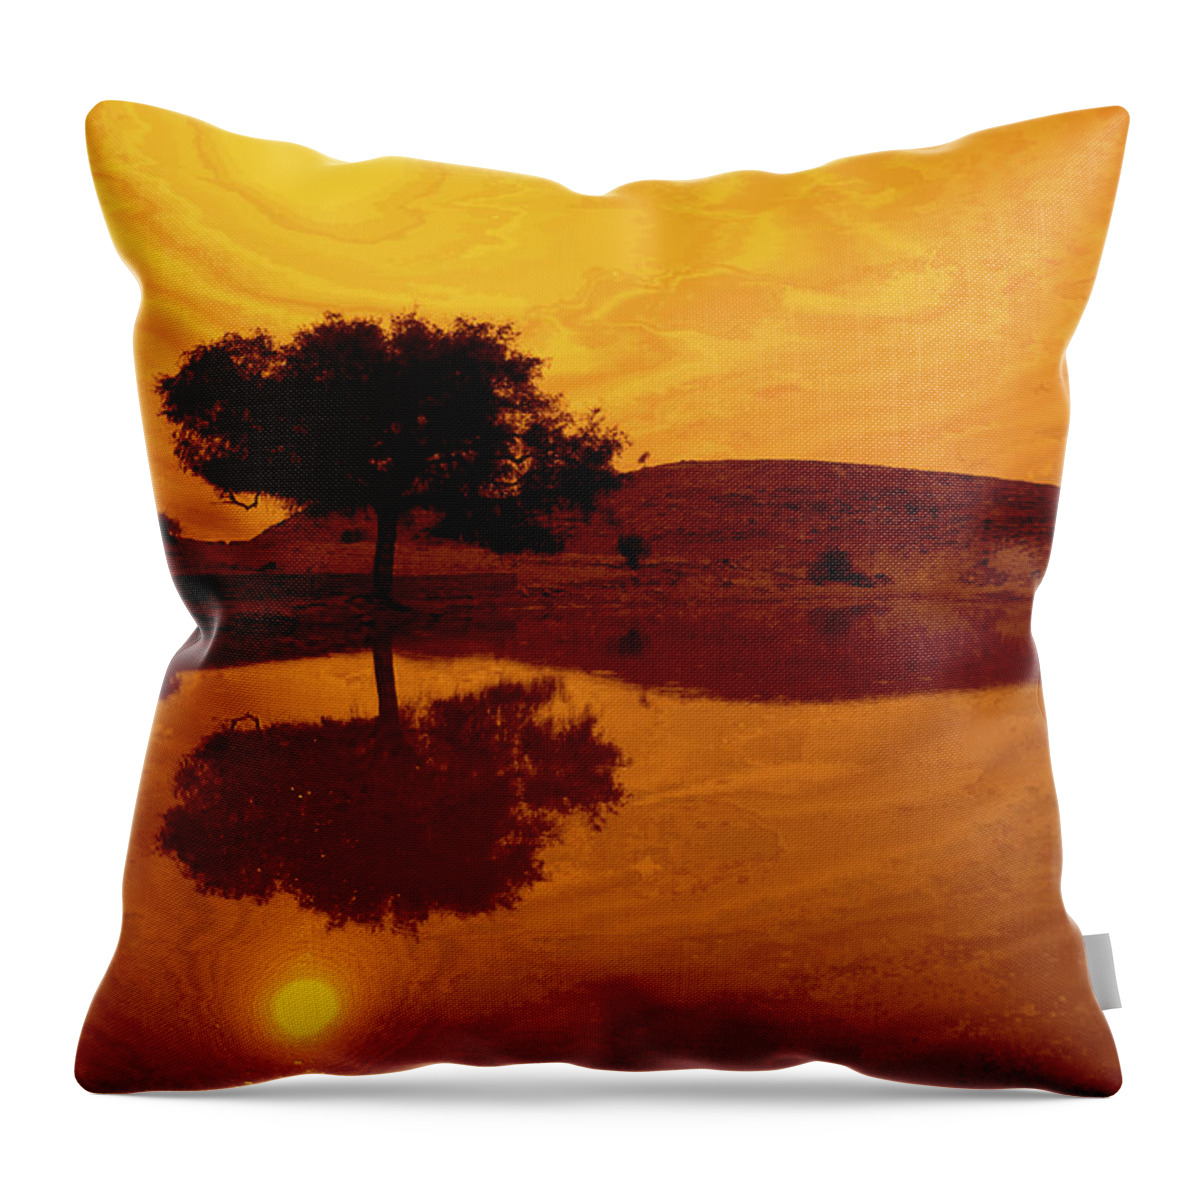 Desert Throw Pillow featuring the photograph Desert Reflections by Valerie Rosen